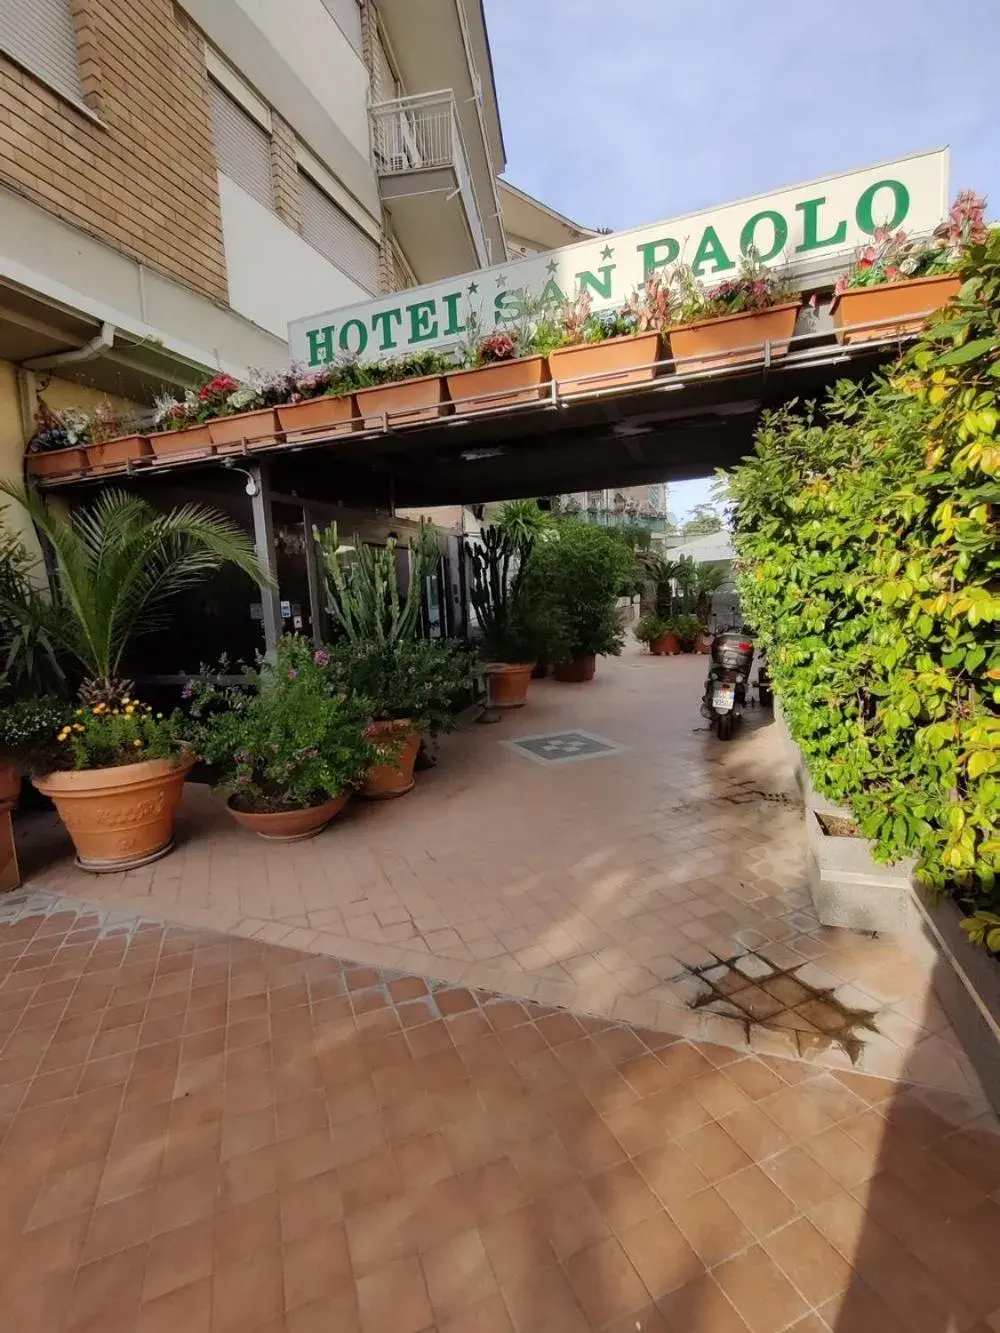 Facade/entrance in Hotel San Paolo